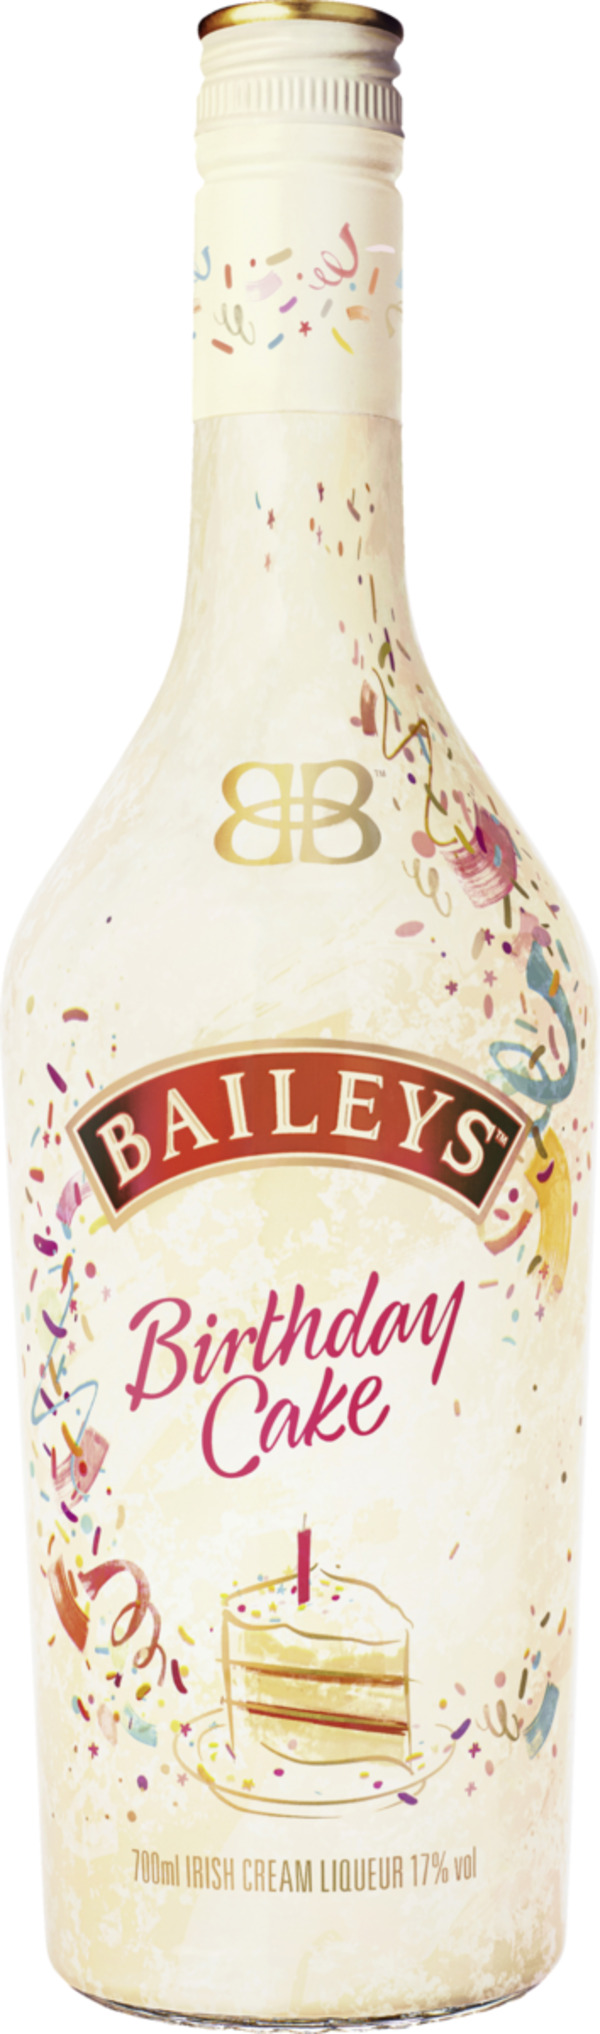 Bild 1 von Baileys Baileys Birthday Cake Irish Cream Liqueur